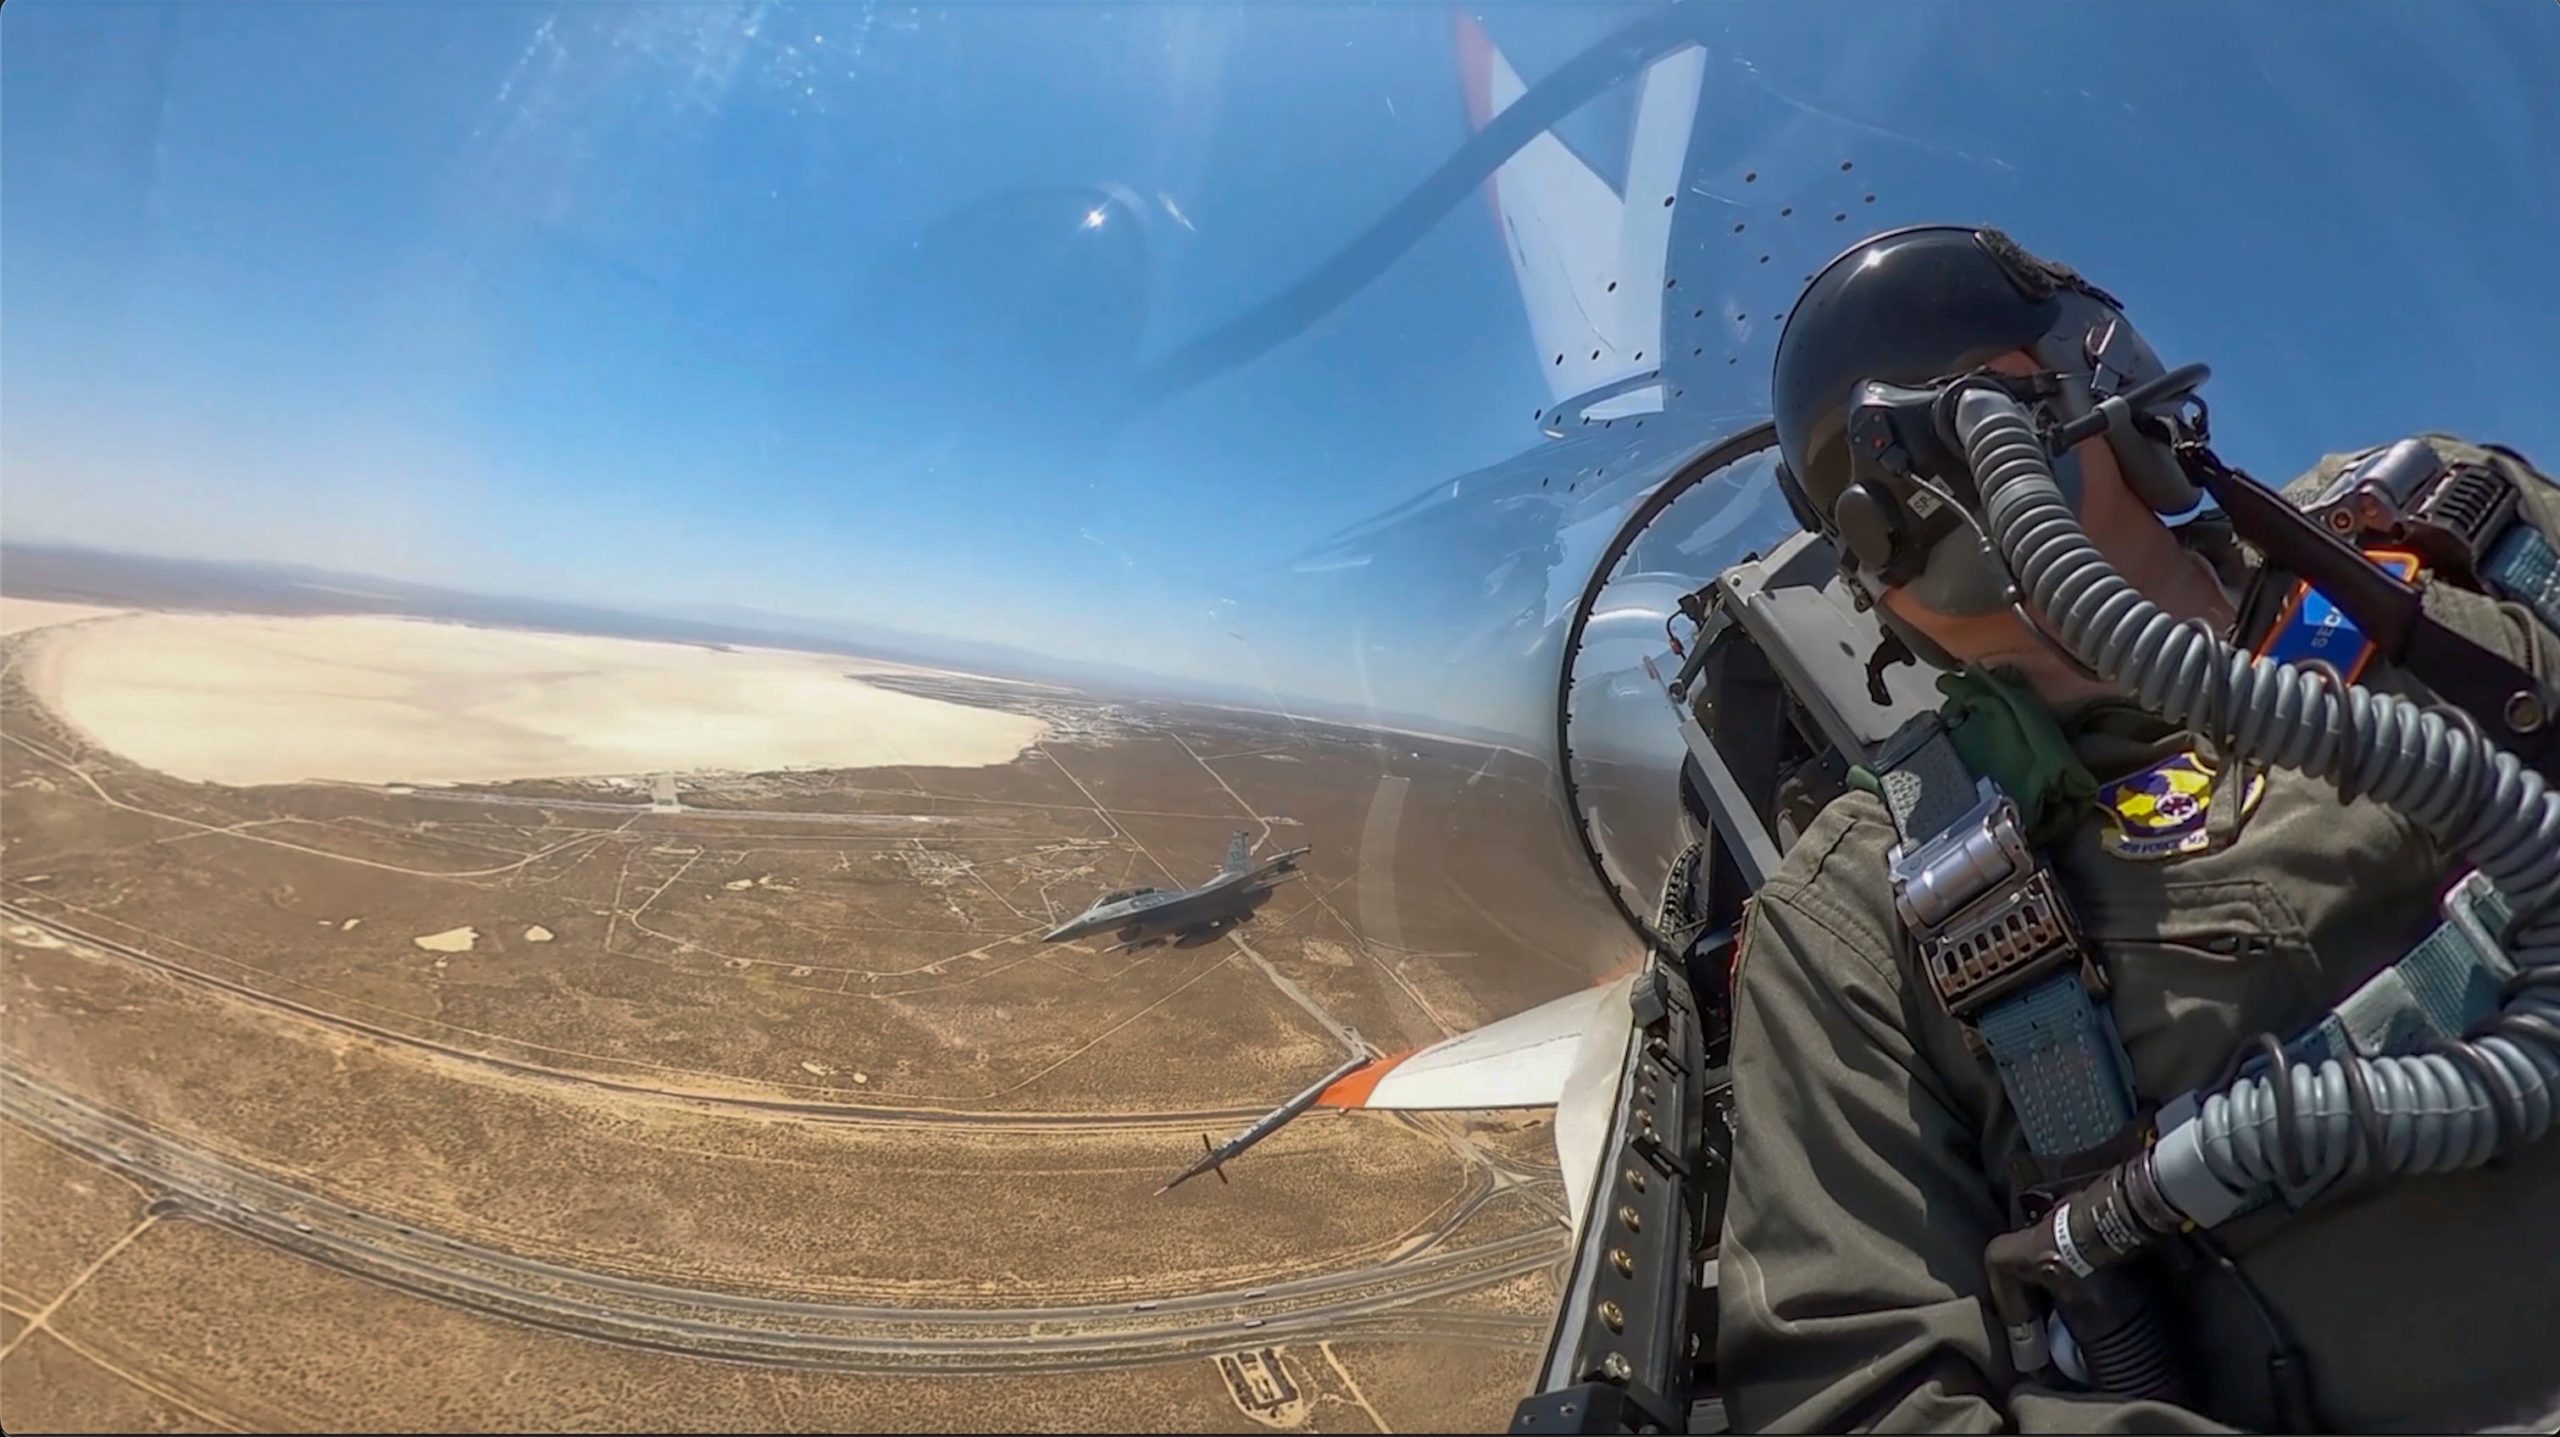 dieser ki-unterstützte kampfjet kann während eines luftkampfs mit einem menschlichen piloten mithalten